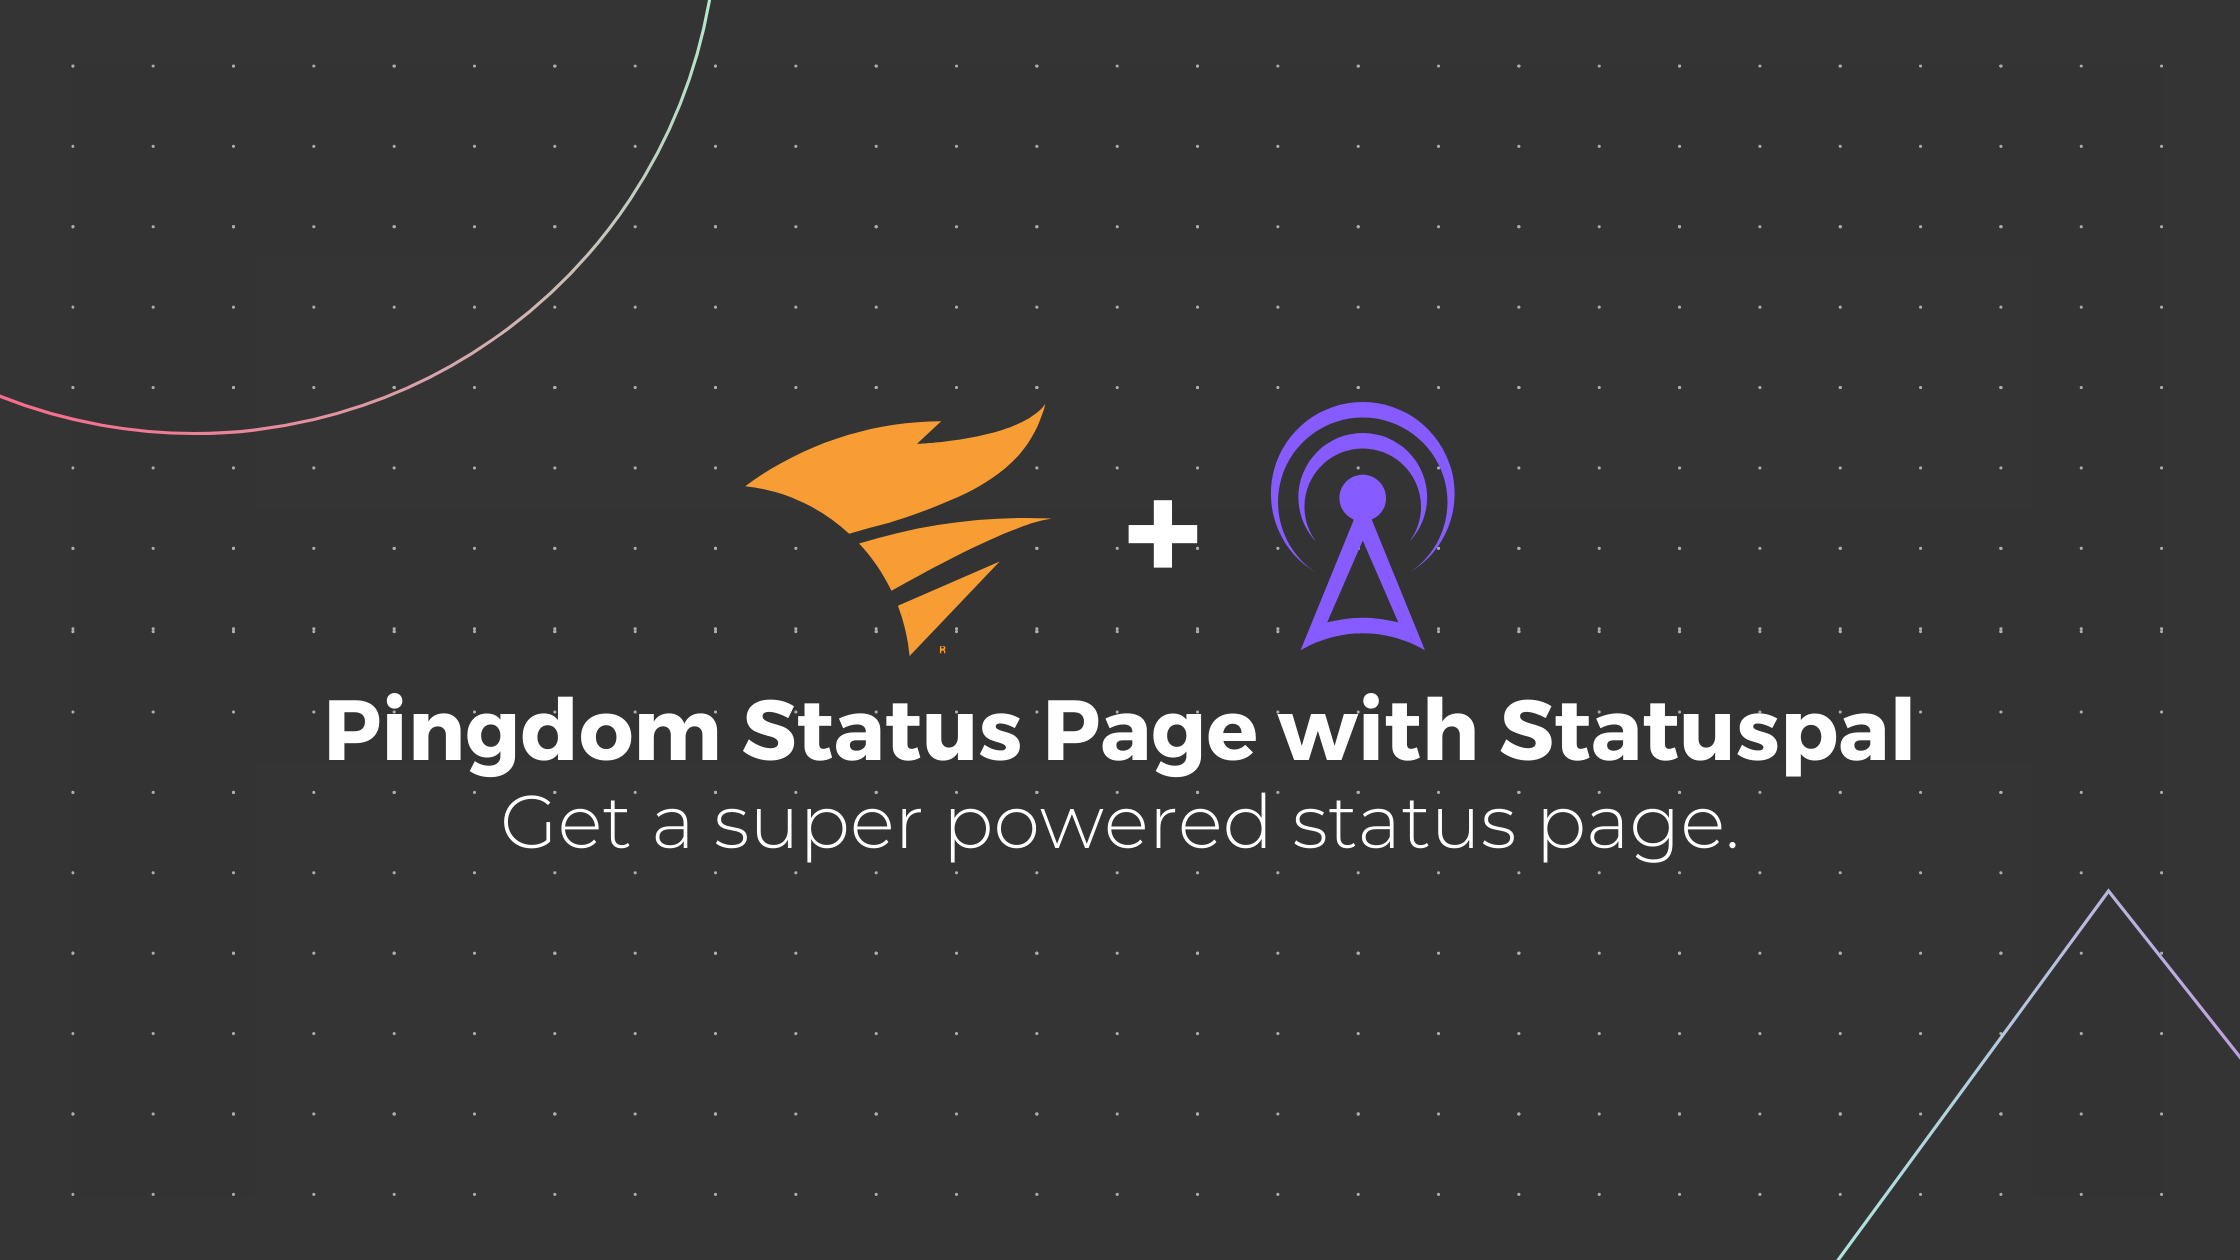 Pingdom Powered Status Page